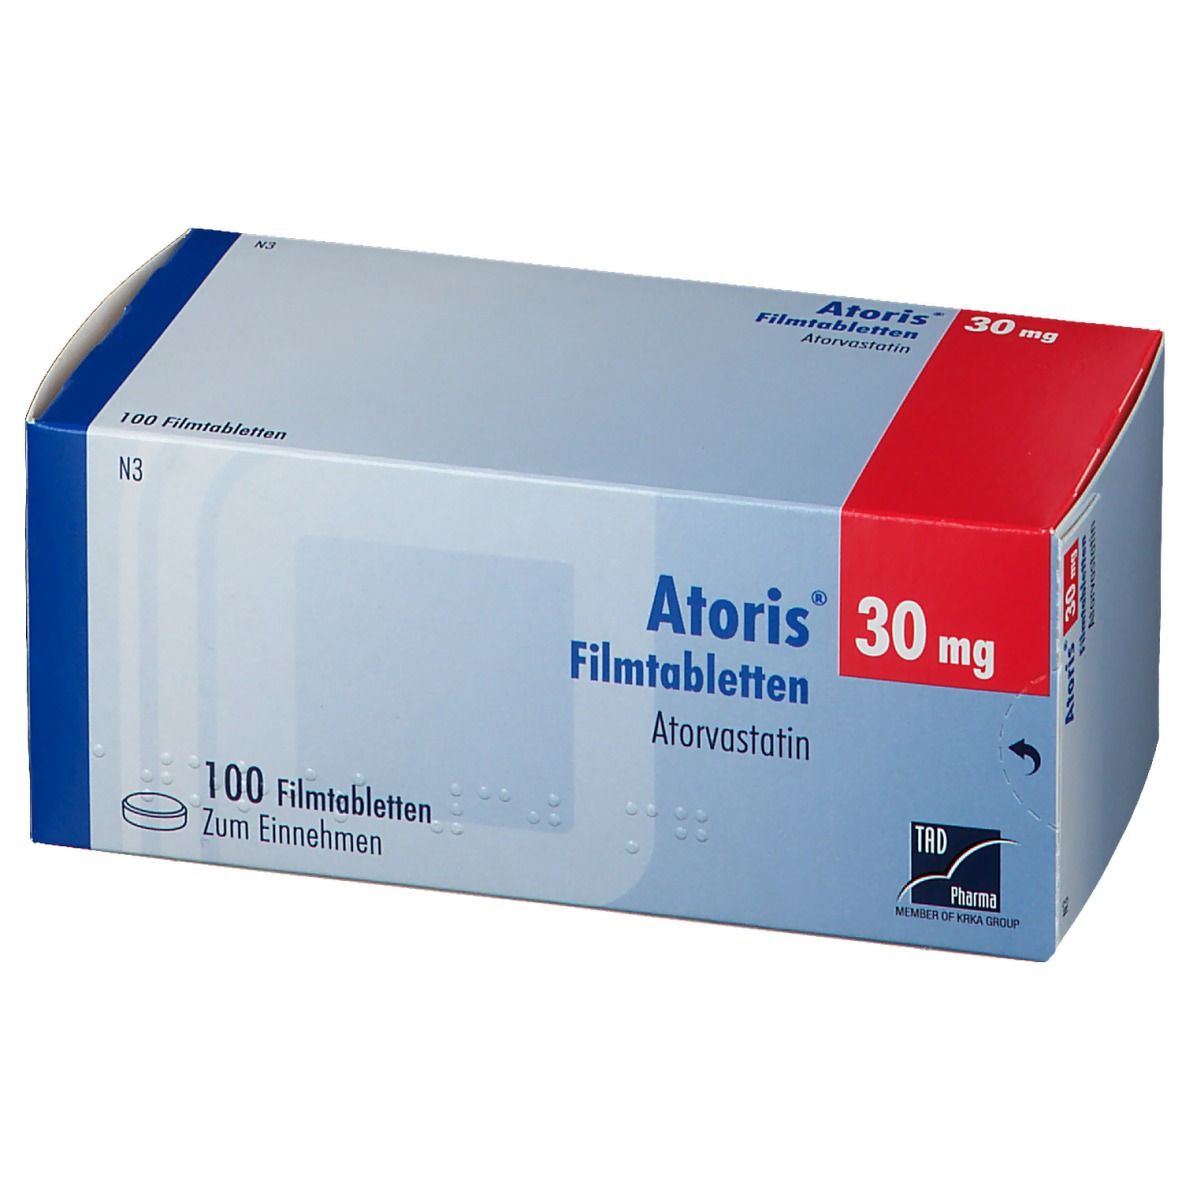 Atoris® 30 mg